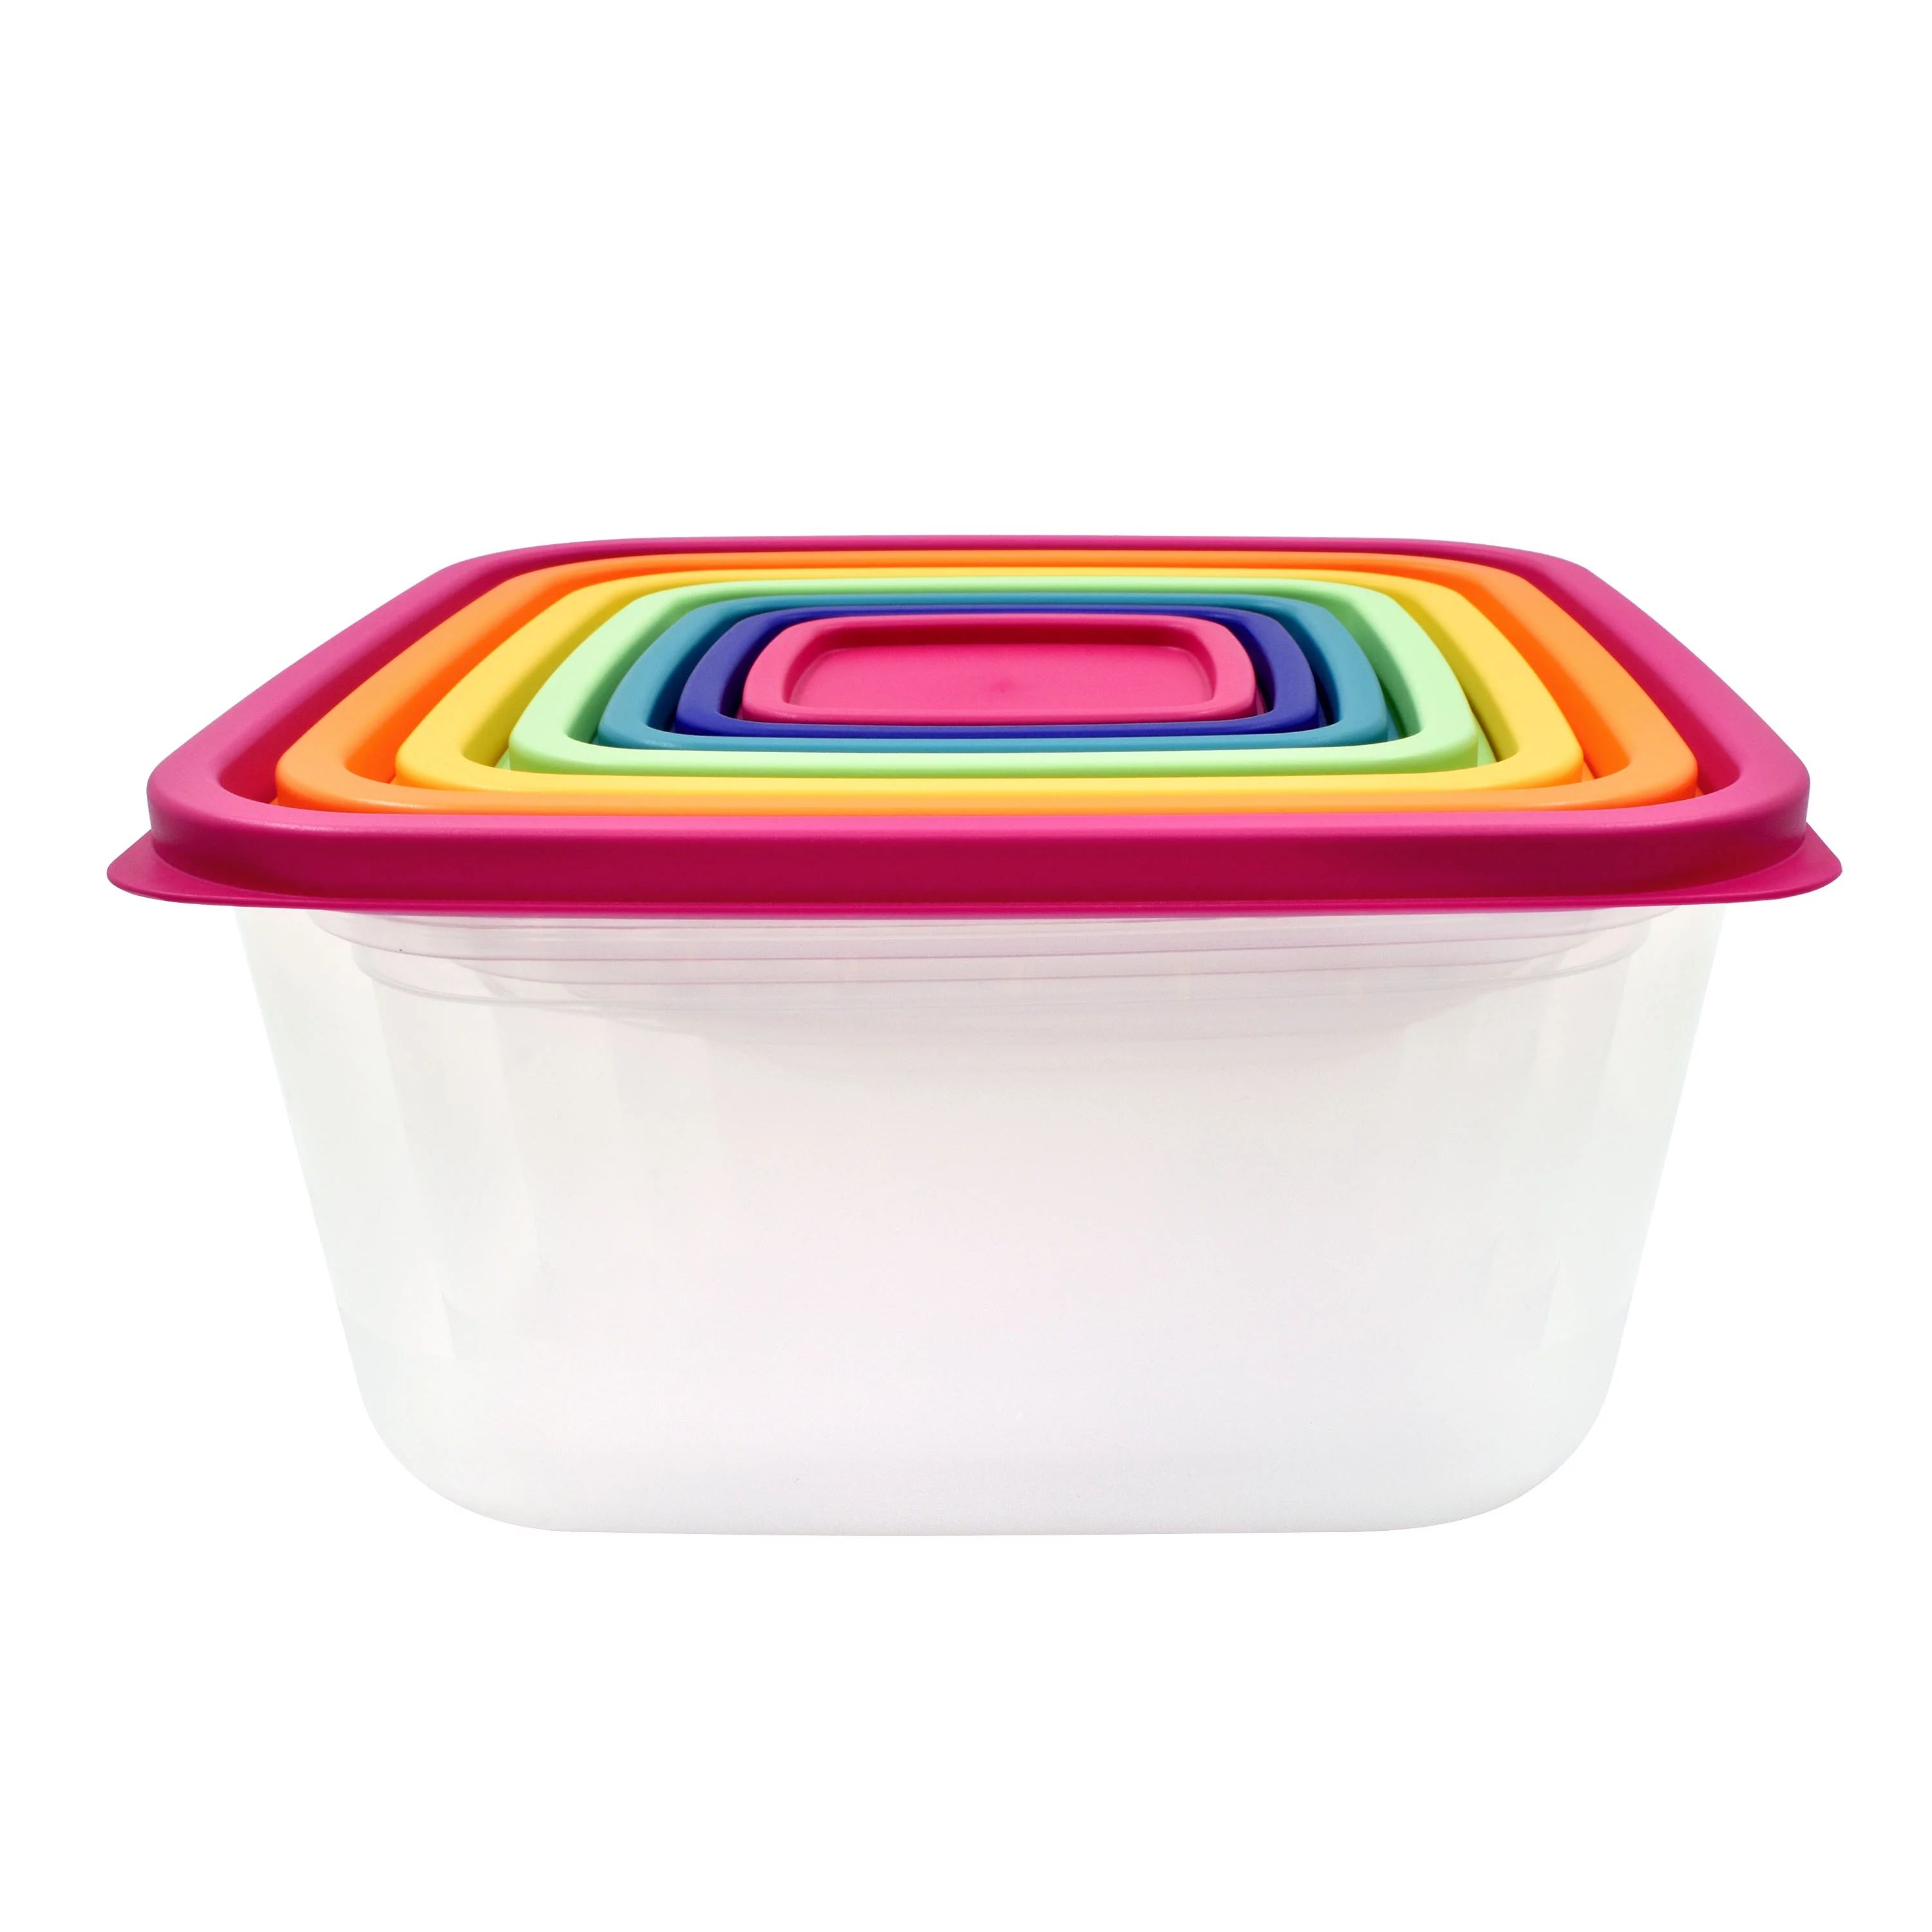 Mainstays Plastic Rainbow Food Storage Set, Multi Color, 14pcs - Walmart.com | Walmart (US)